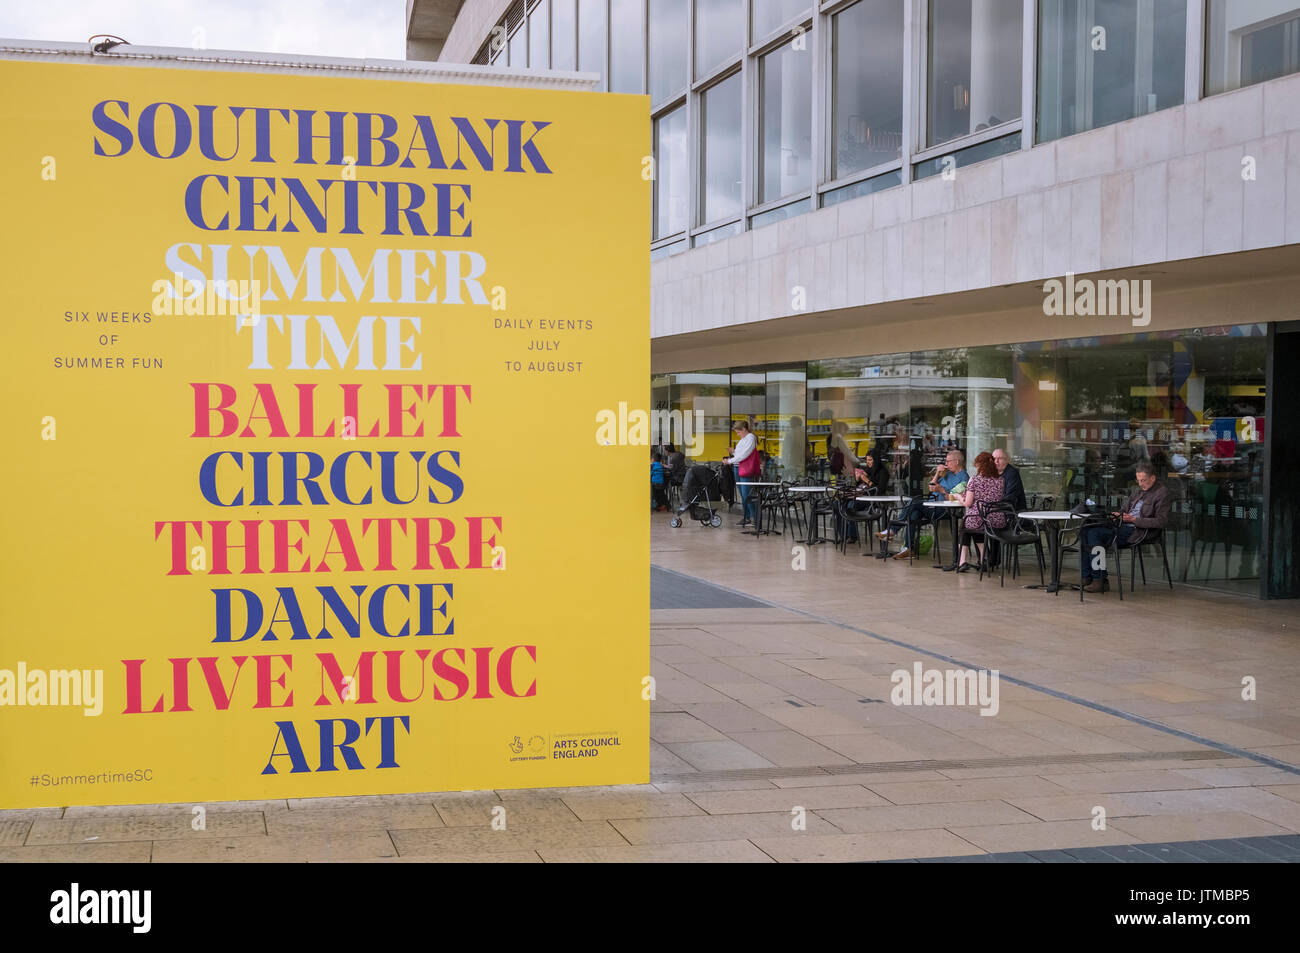 Werbung board Auflistung Unterhaltung Arten außerhalb der Southbank Centre Royal Festival Hall, London, England, Großbritannien Stockfoto